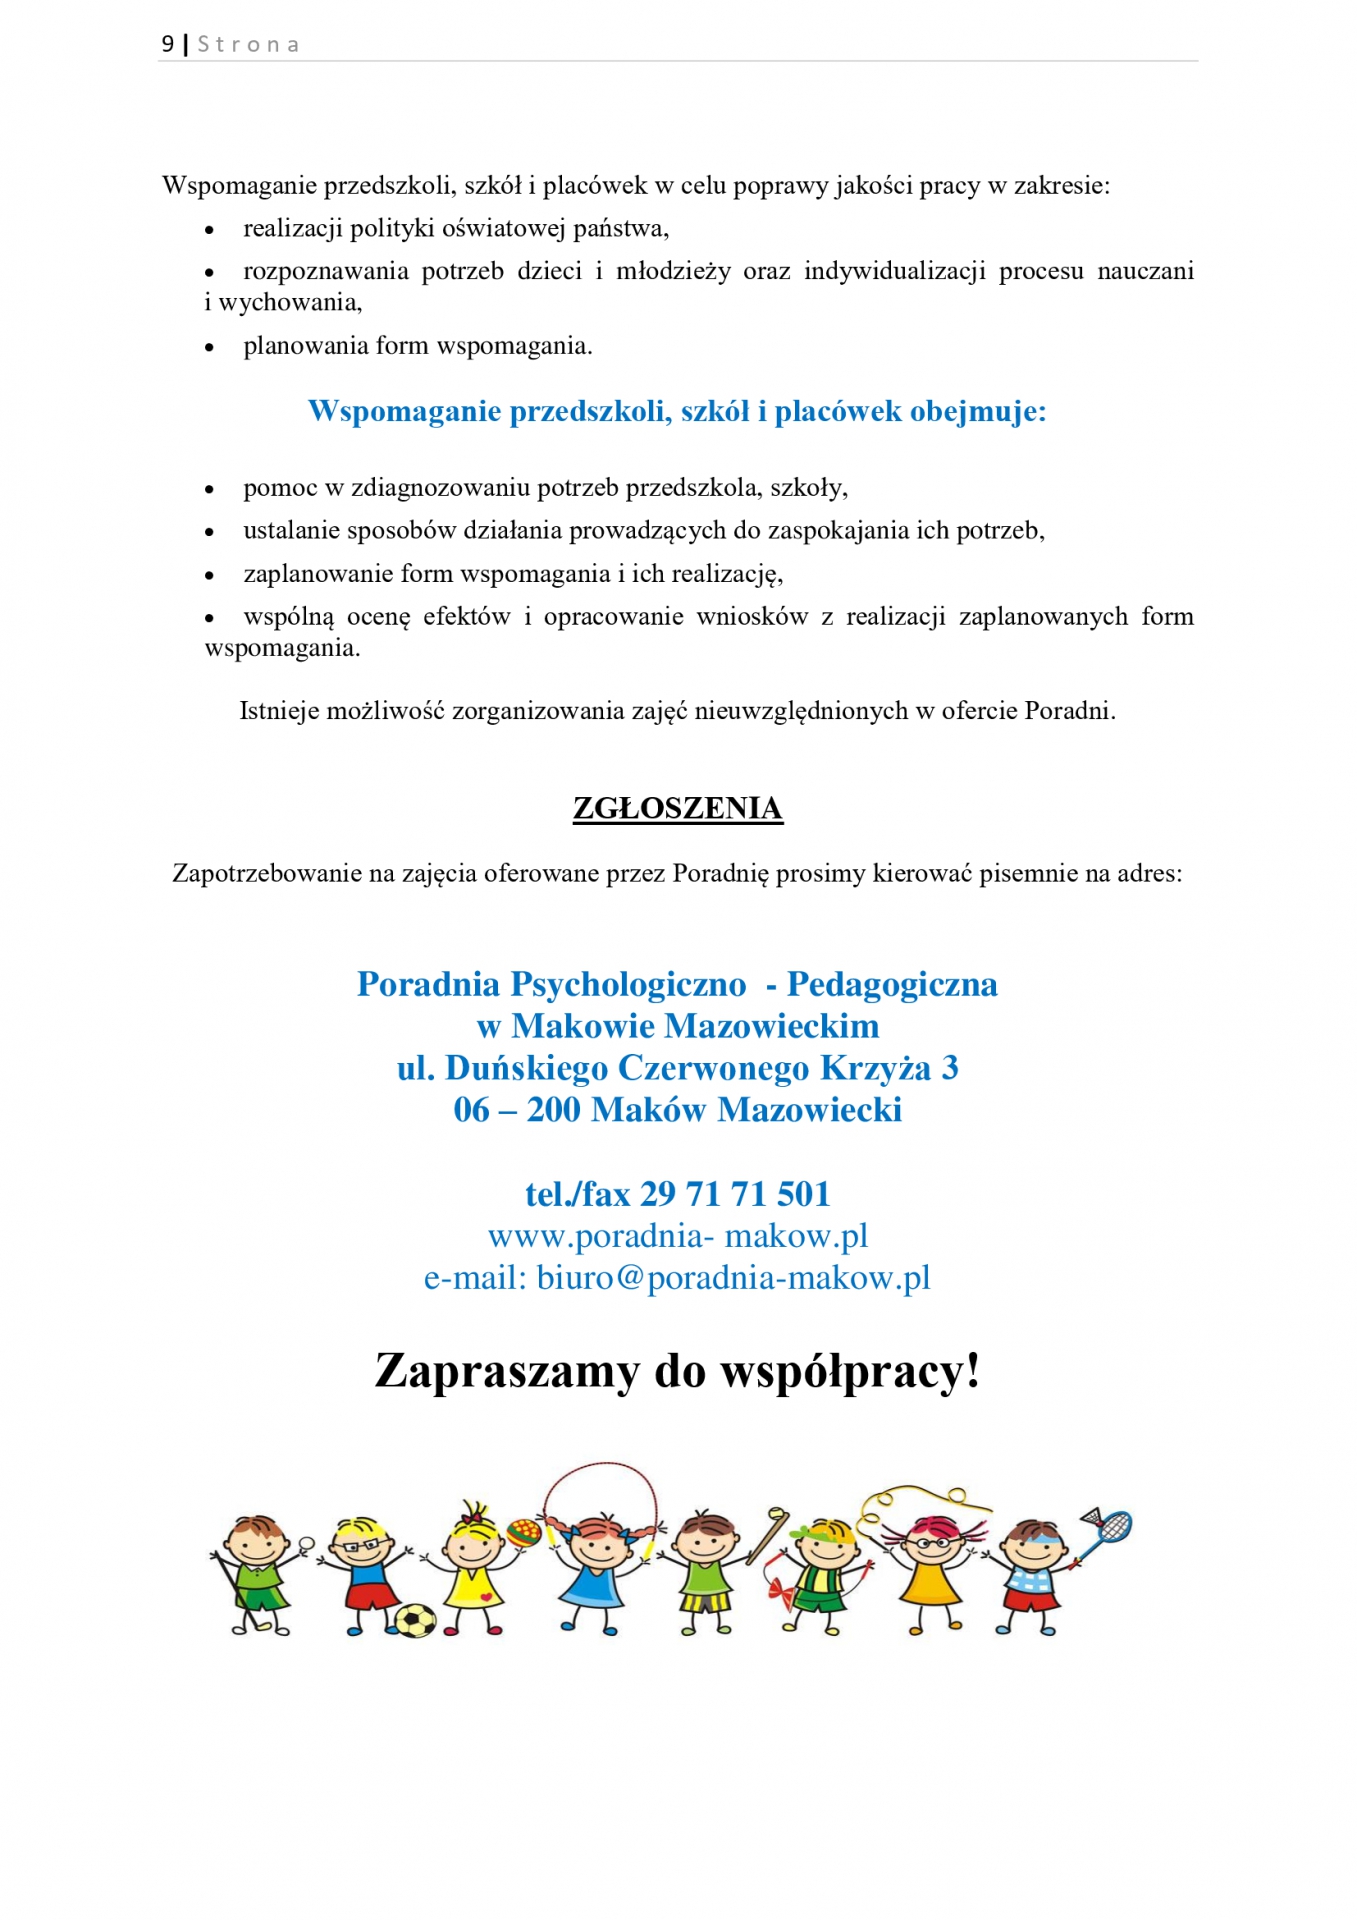 Oferta Poradni Psychologiczno-Pedagogicznej w Makowie Mazowieckim. Strona 9